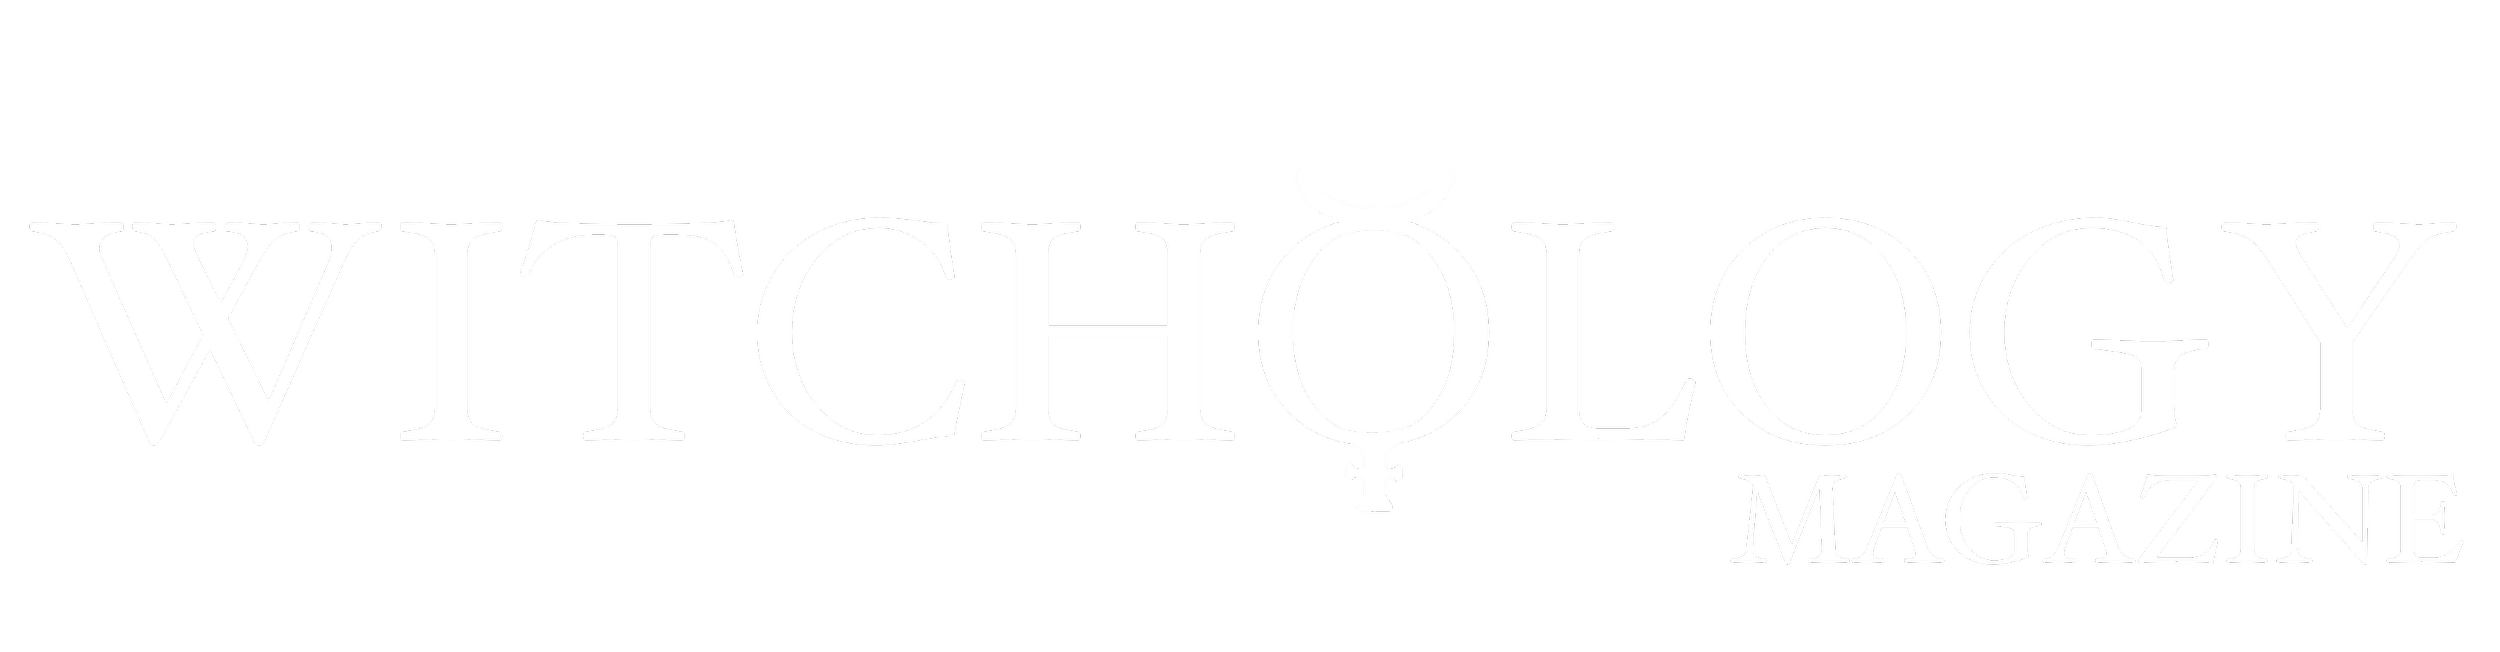 Witchology Magazine Logo